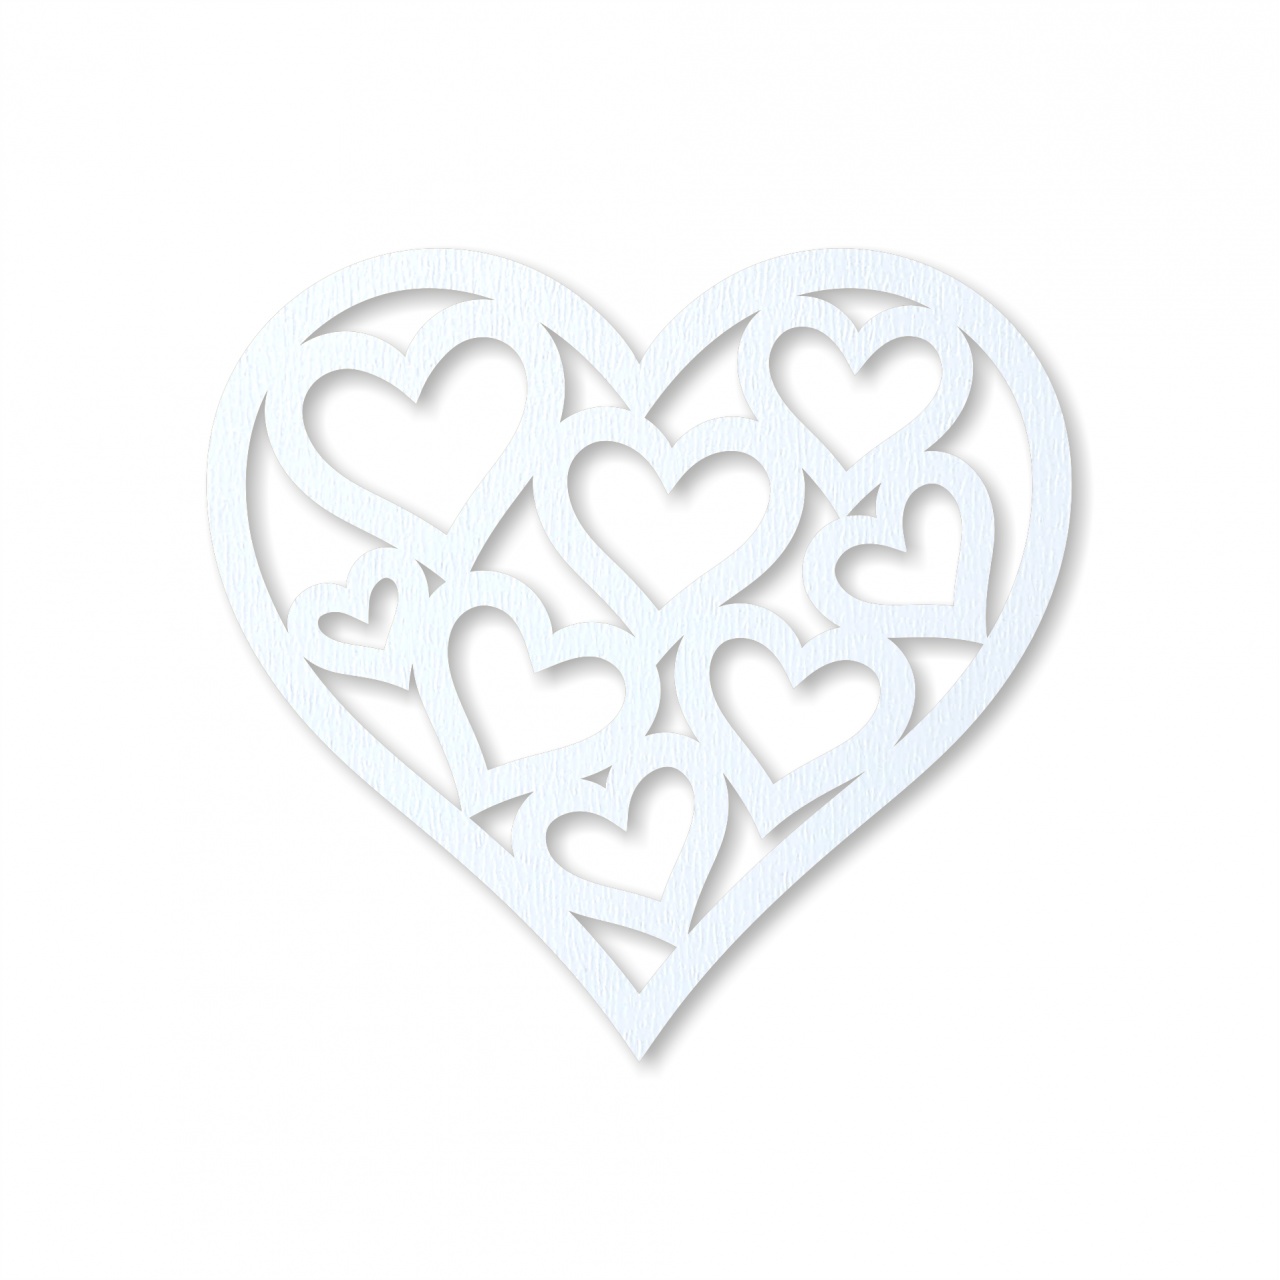 Inimă cu inimioare, 6×5,5 cm, MDF alb :: 6 cm